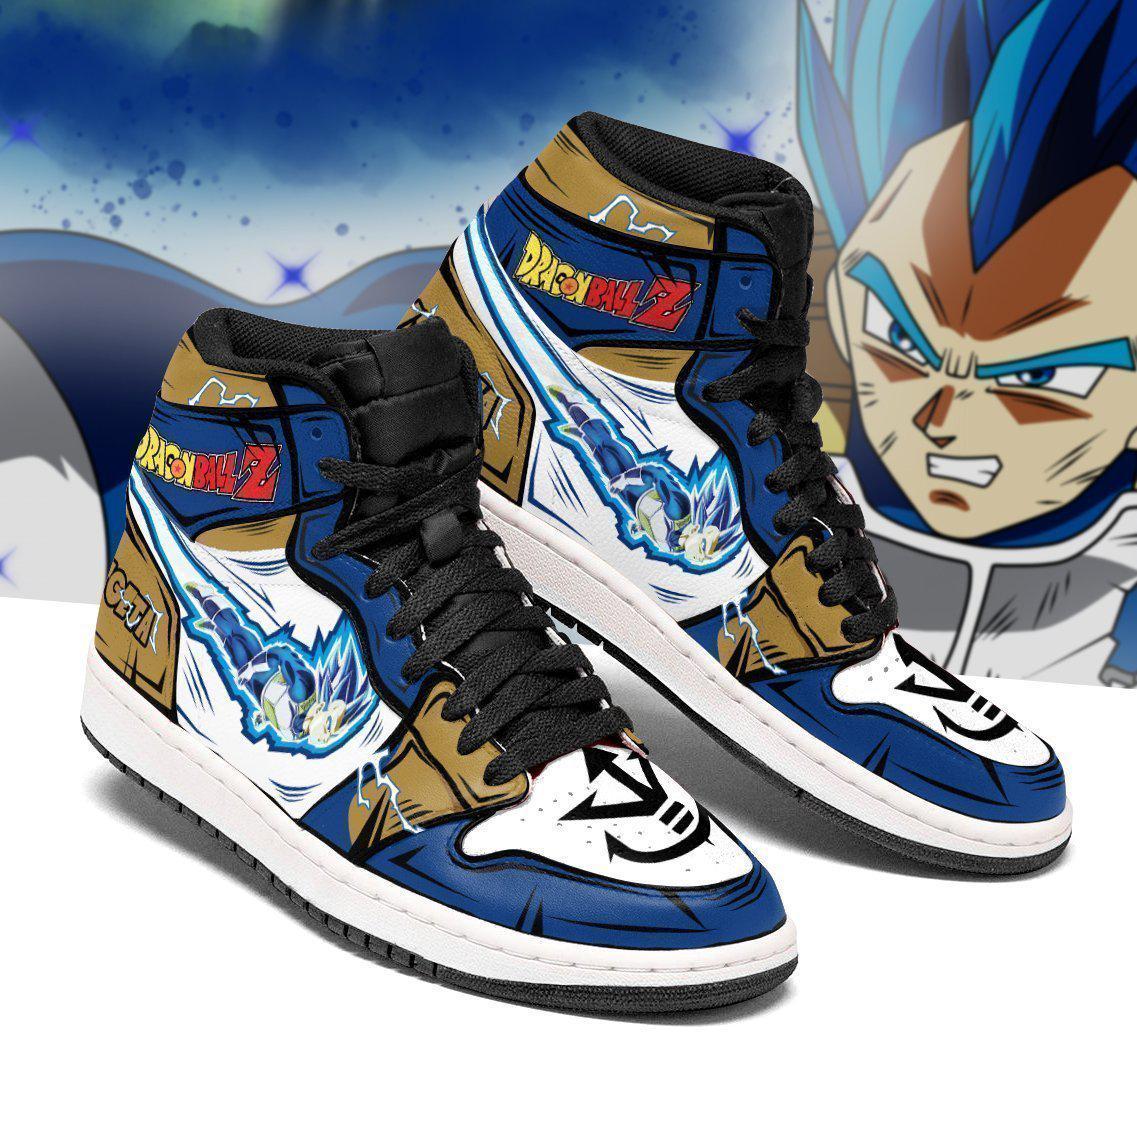 vegeta blue jordan sneakers dragon ball z anime sneakers - DBZ Shop